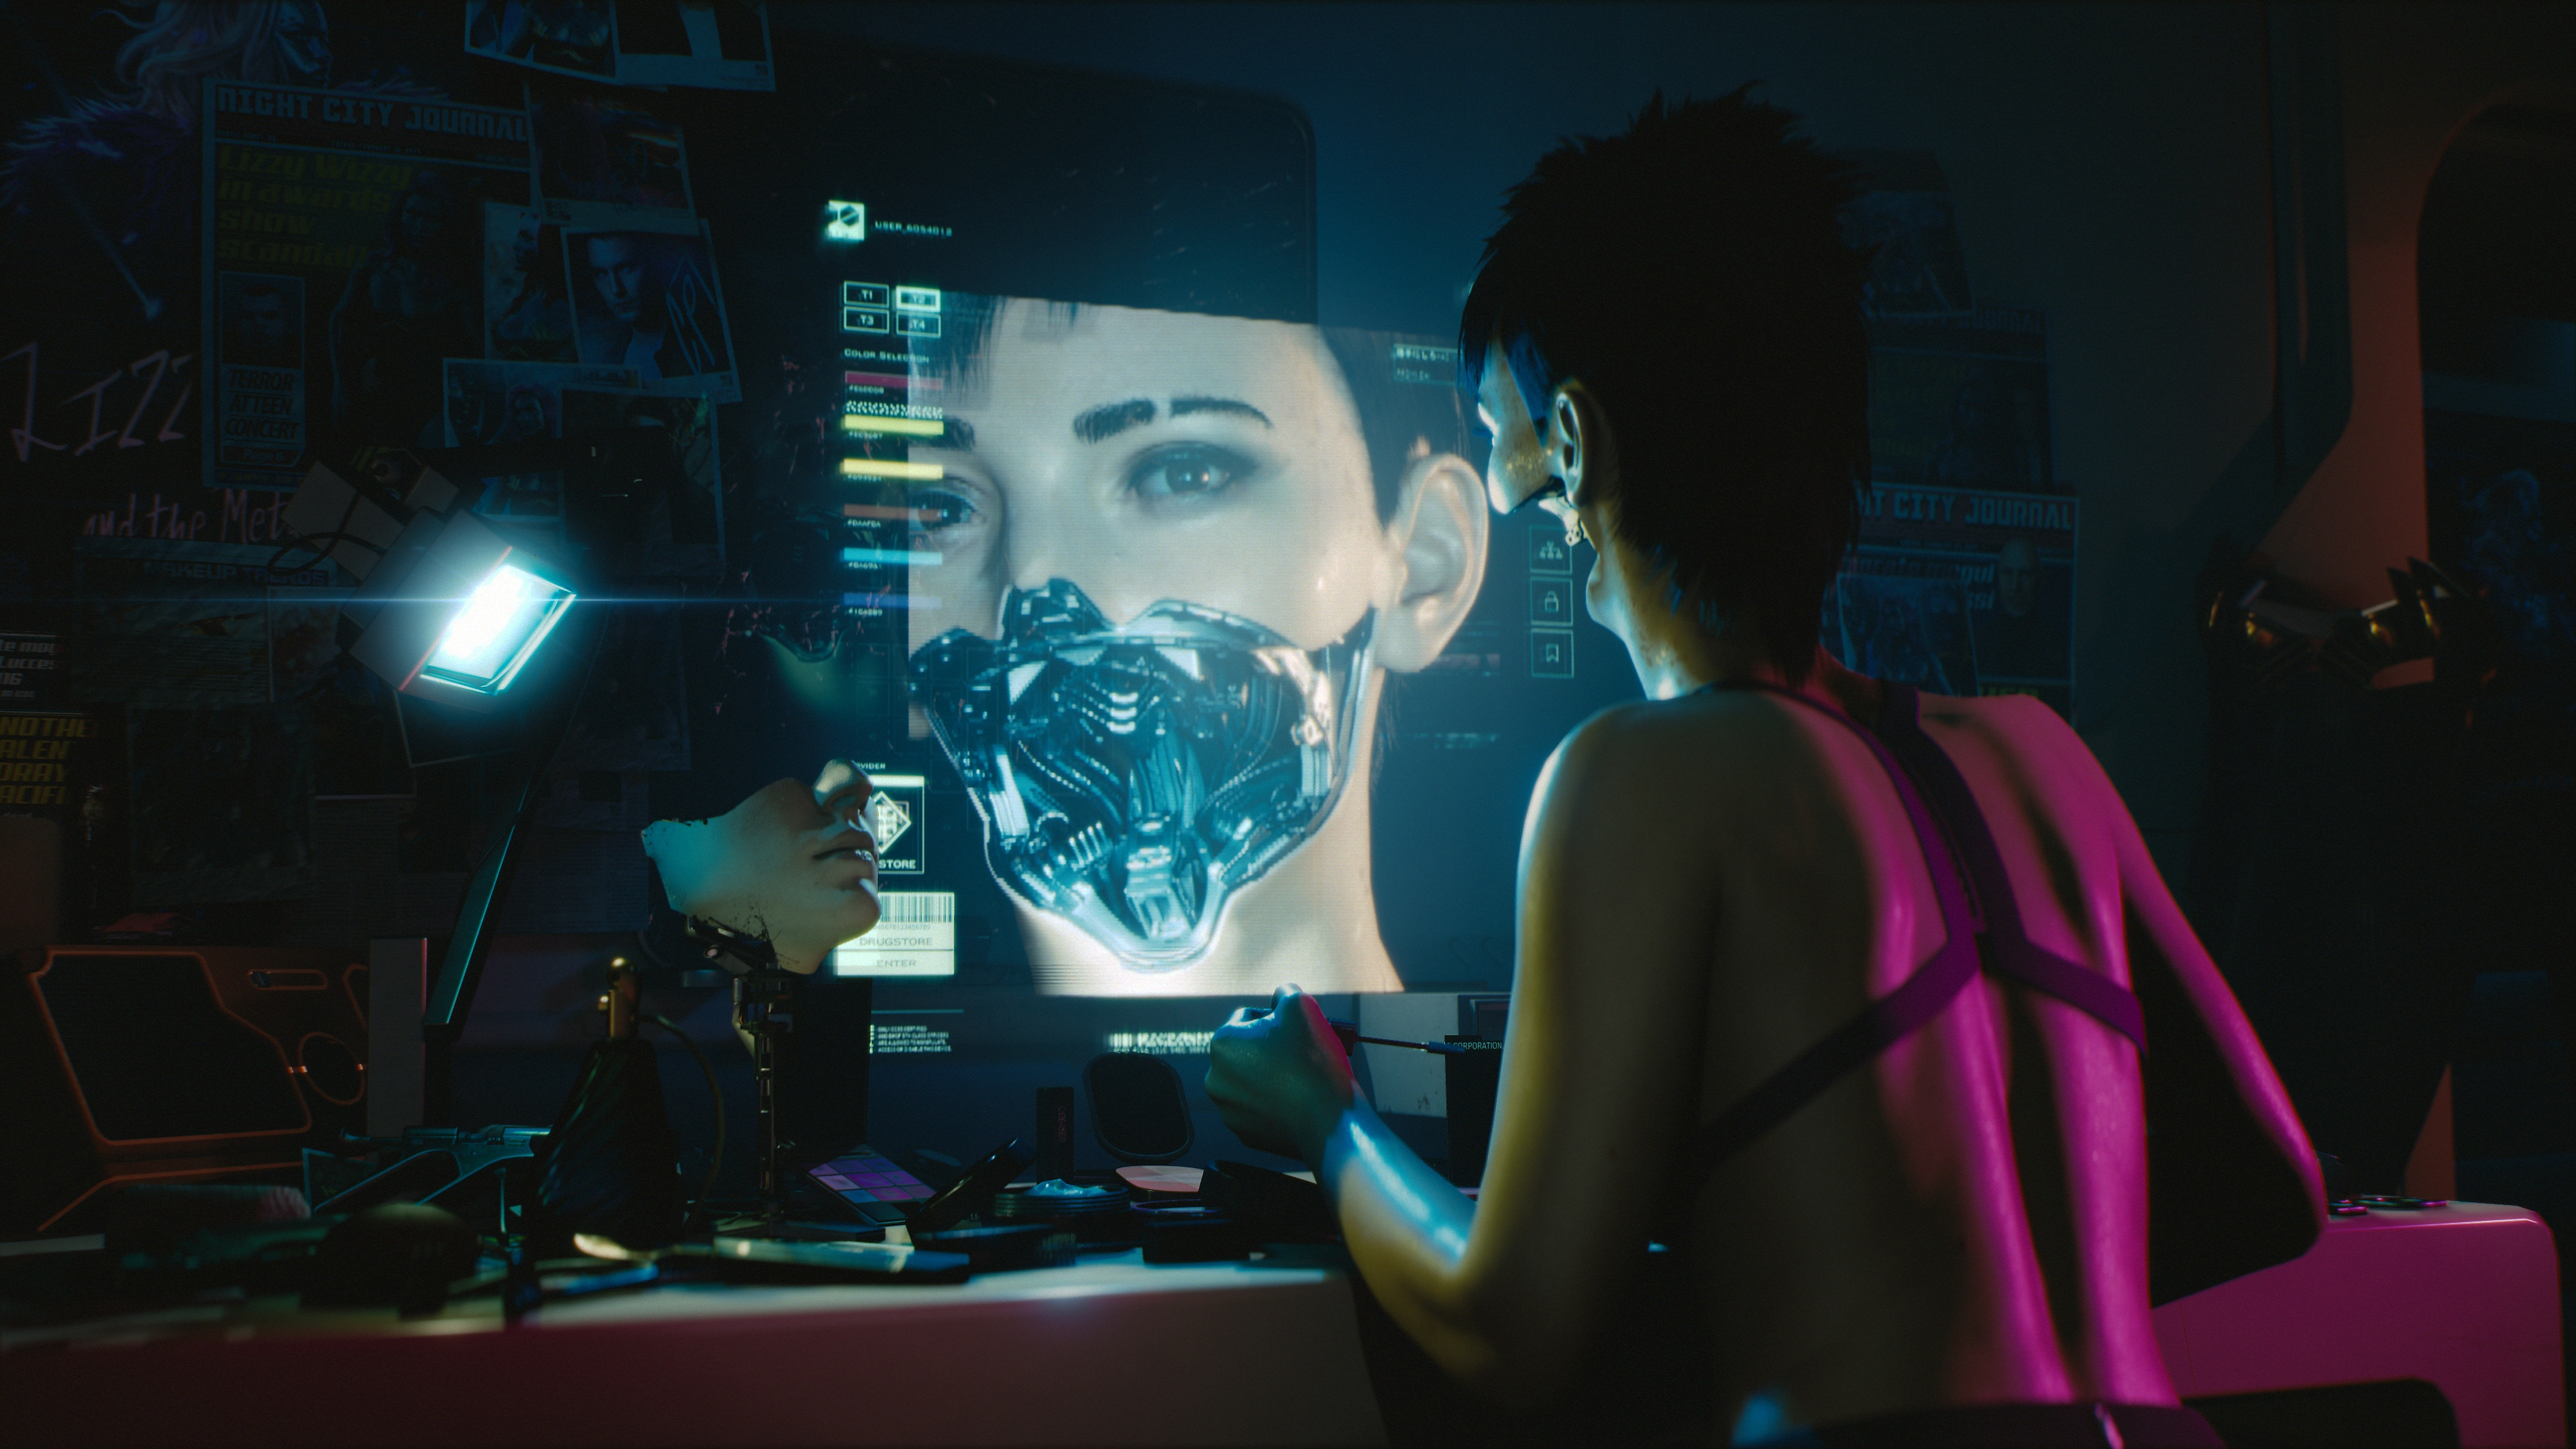 Cyberpunk 2077 - اصنع Cyberpunk الخاص بك - لقطة شاشة للميزات الأساسية